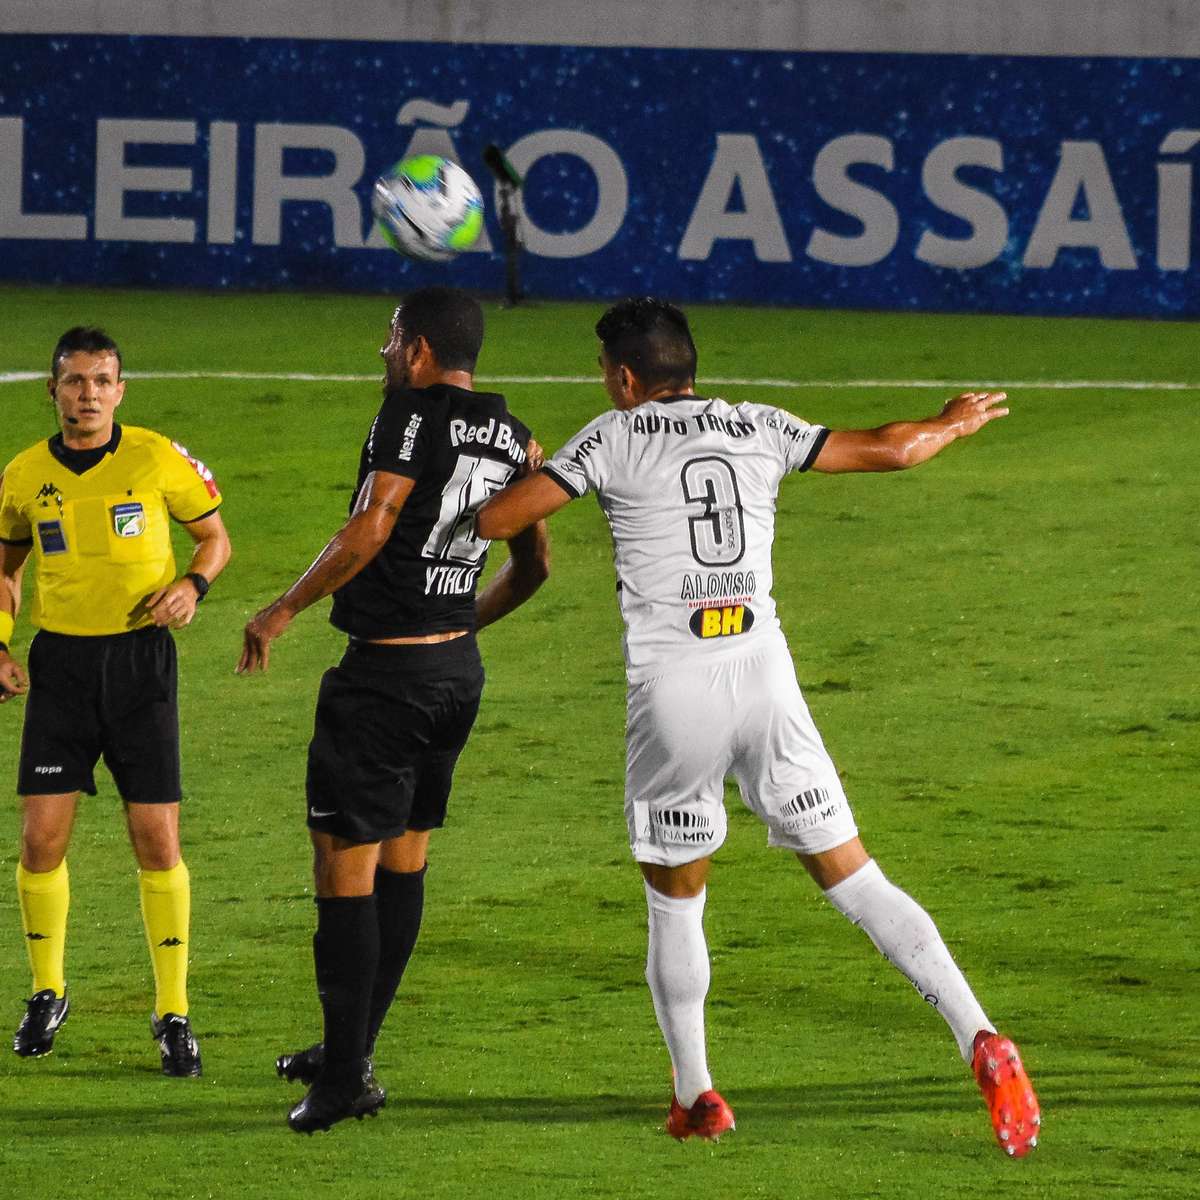 Vila Nova busca empate no último lance e evita derrota para o